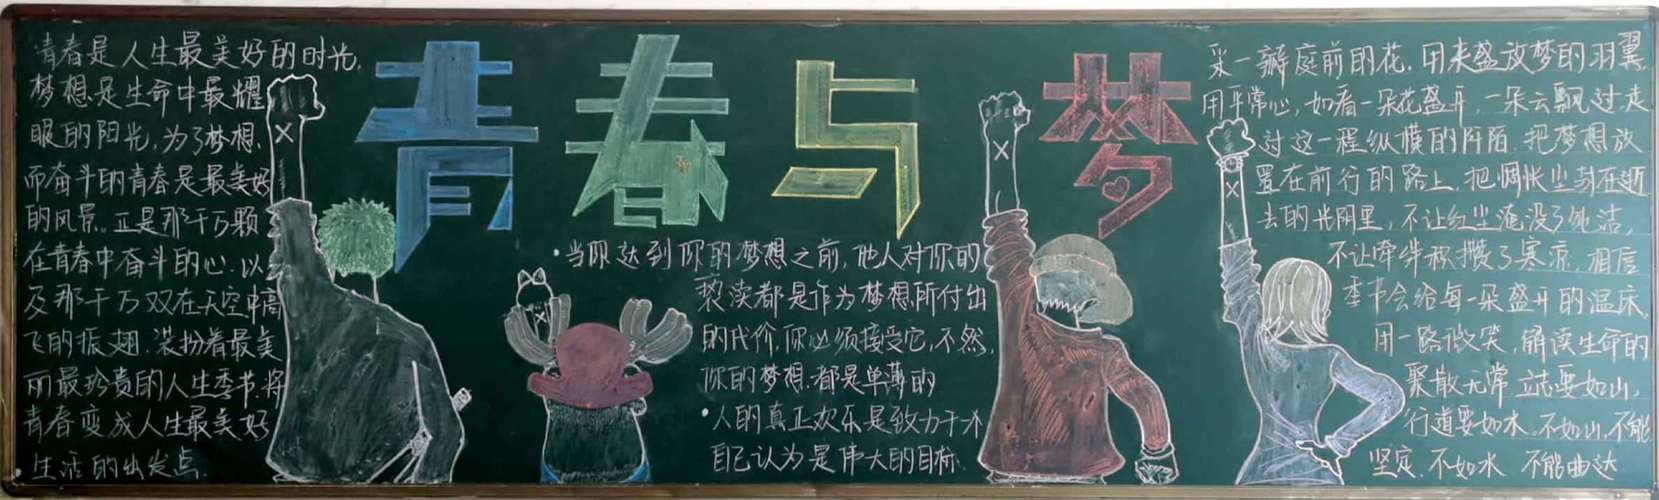 博州实验中学励志青春勇敢追梦主题黑板报评比活动